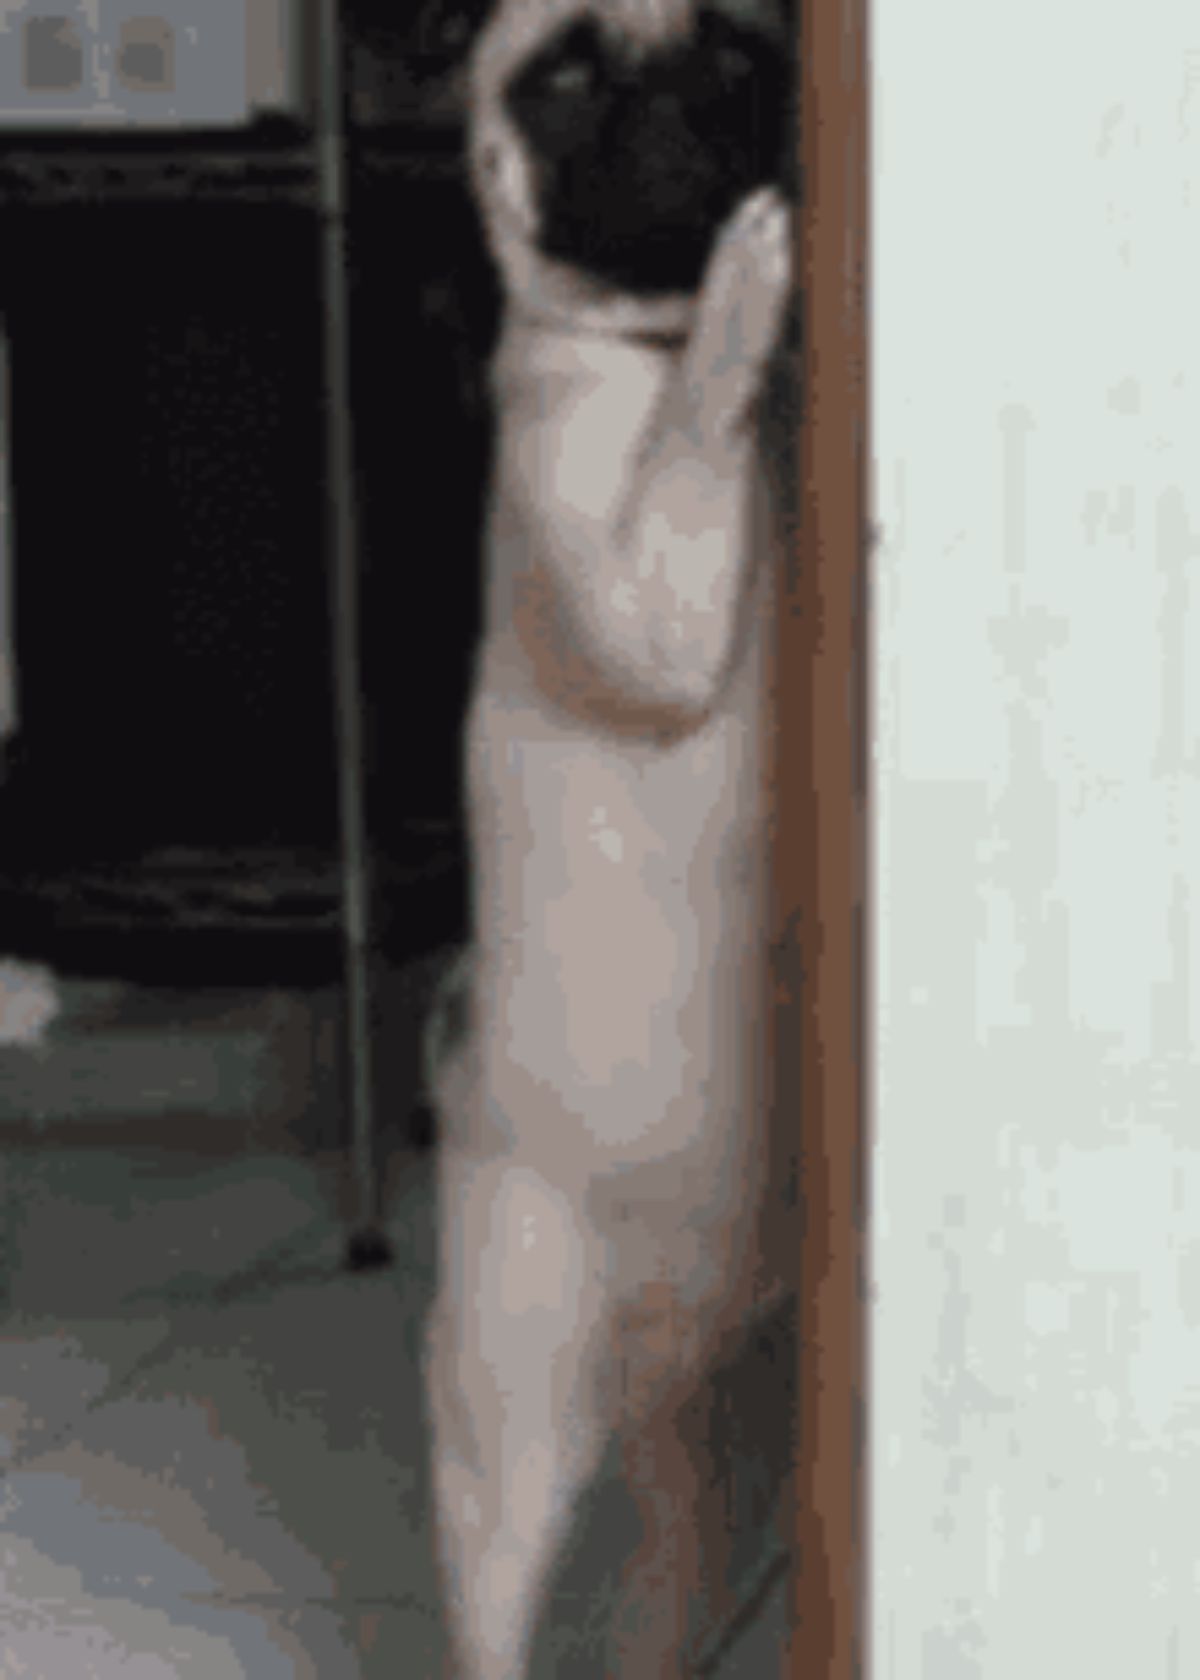 brown pug standing on hind legs and peering around a doorway